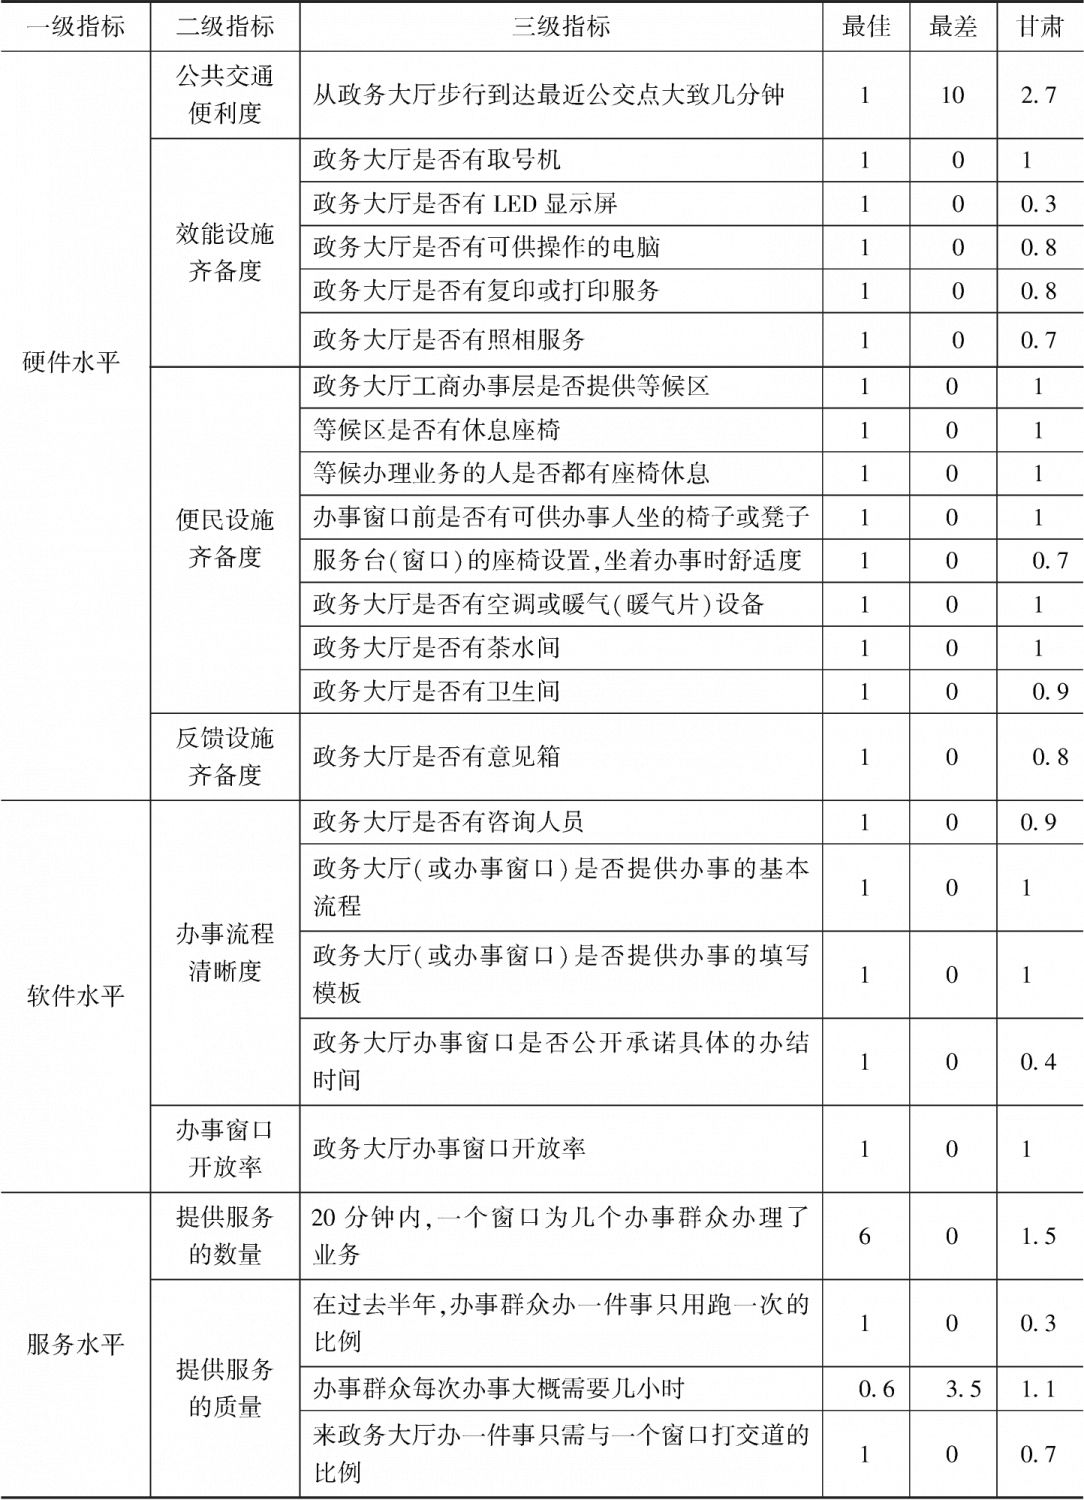 表16-2 政务环境评估指标体系